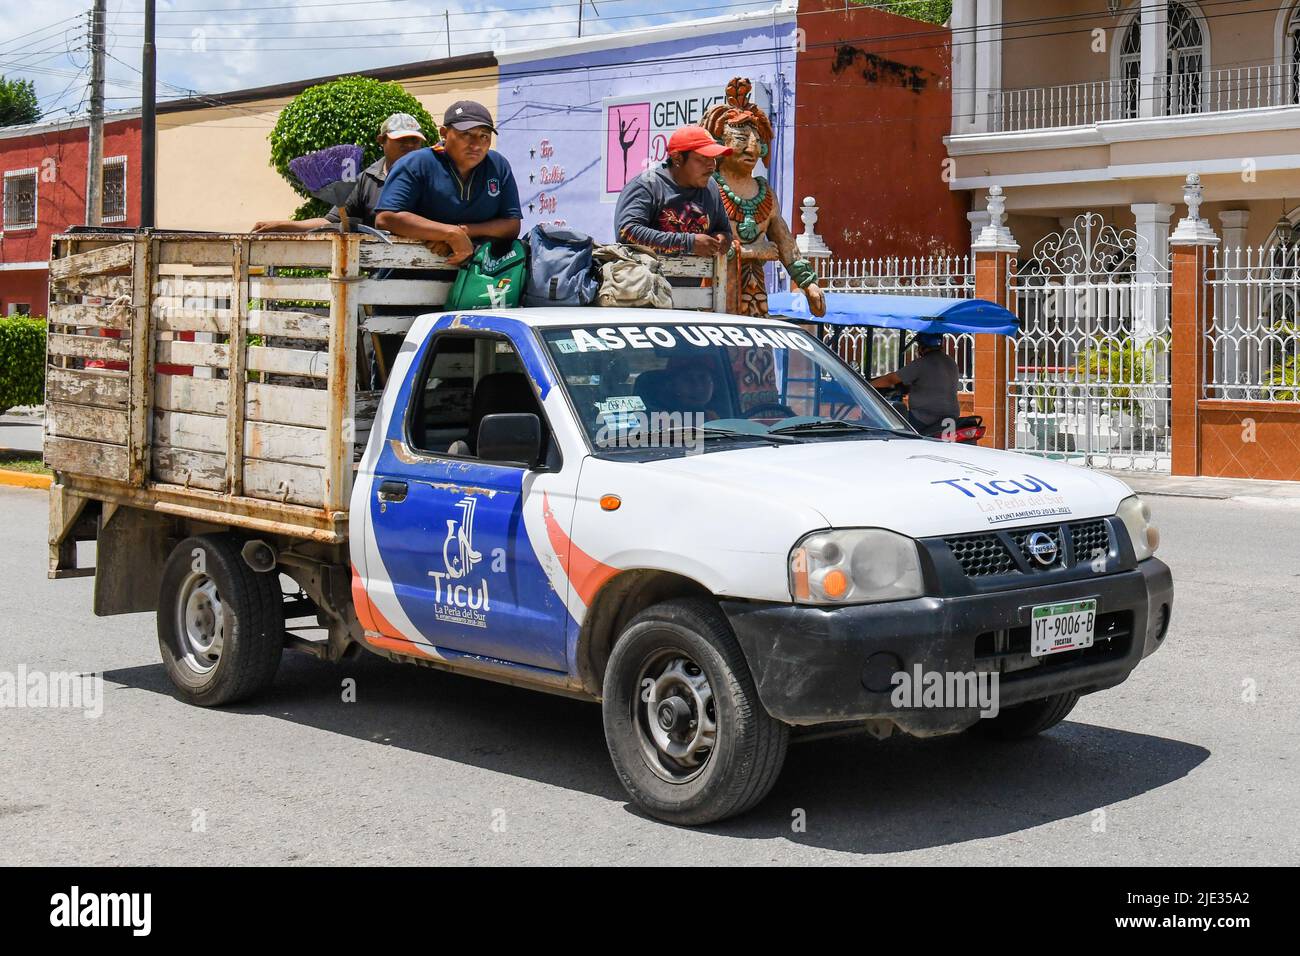 Trabajadores mexicanos parados en la parte trasera de un camión, Ticil, Yucatán, México Foto de stock